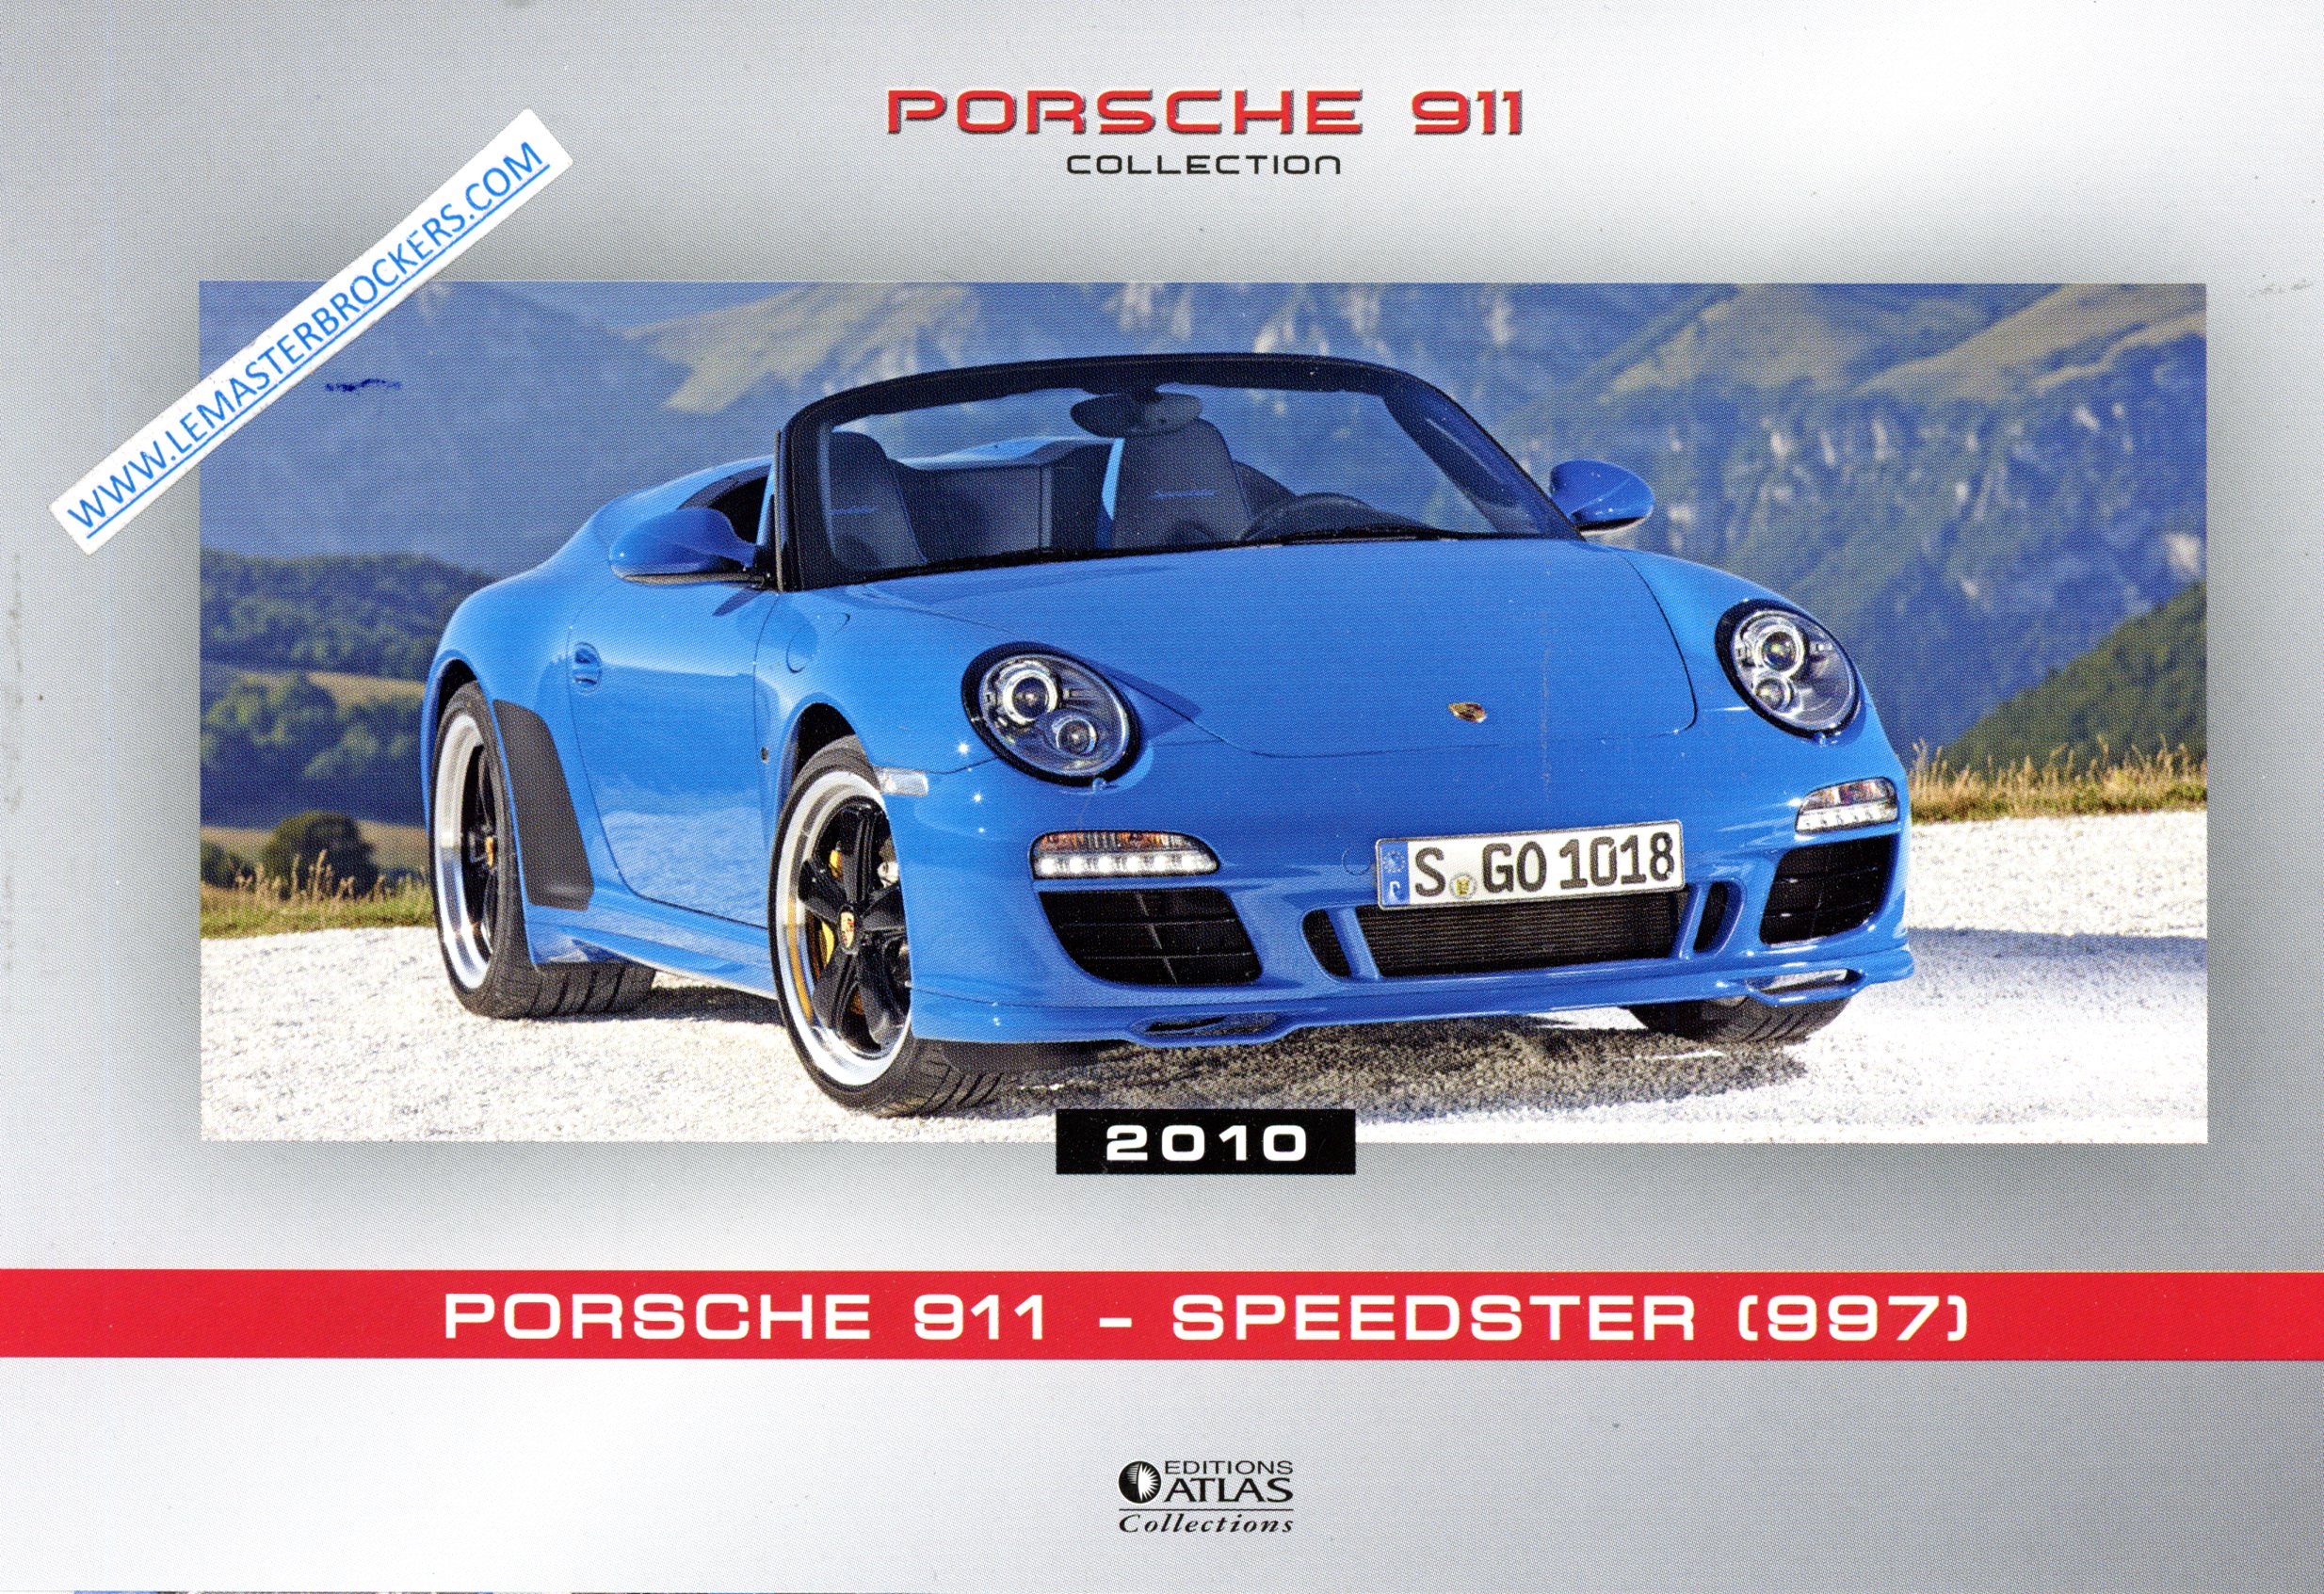 PORSCHE 911 SPEEDSTER 997 2010 FICHE AUTO PORSCHE